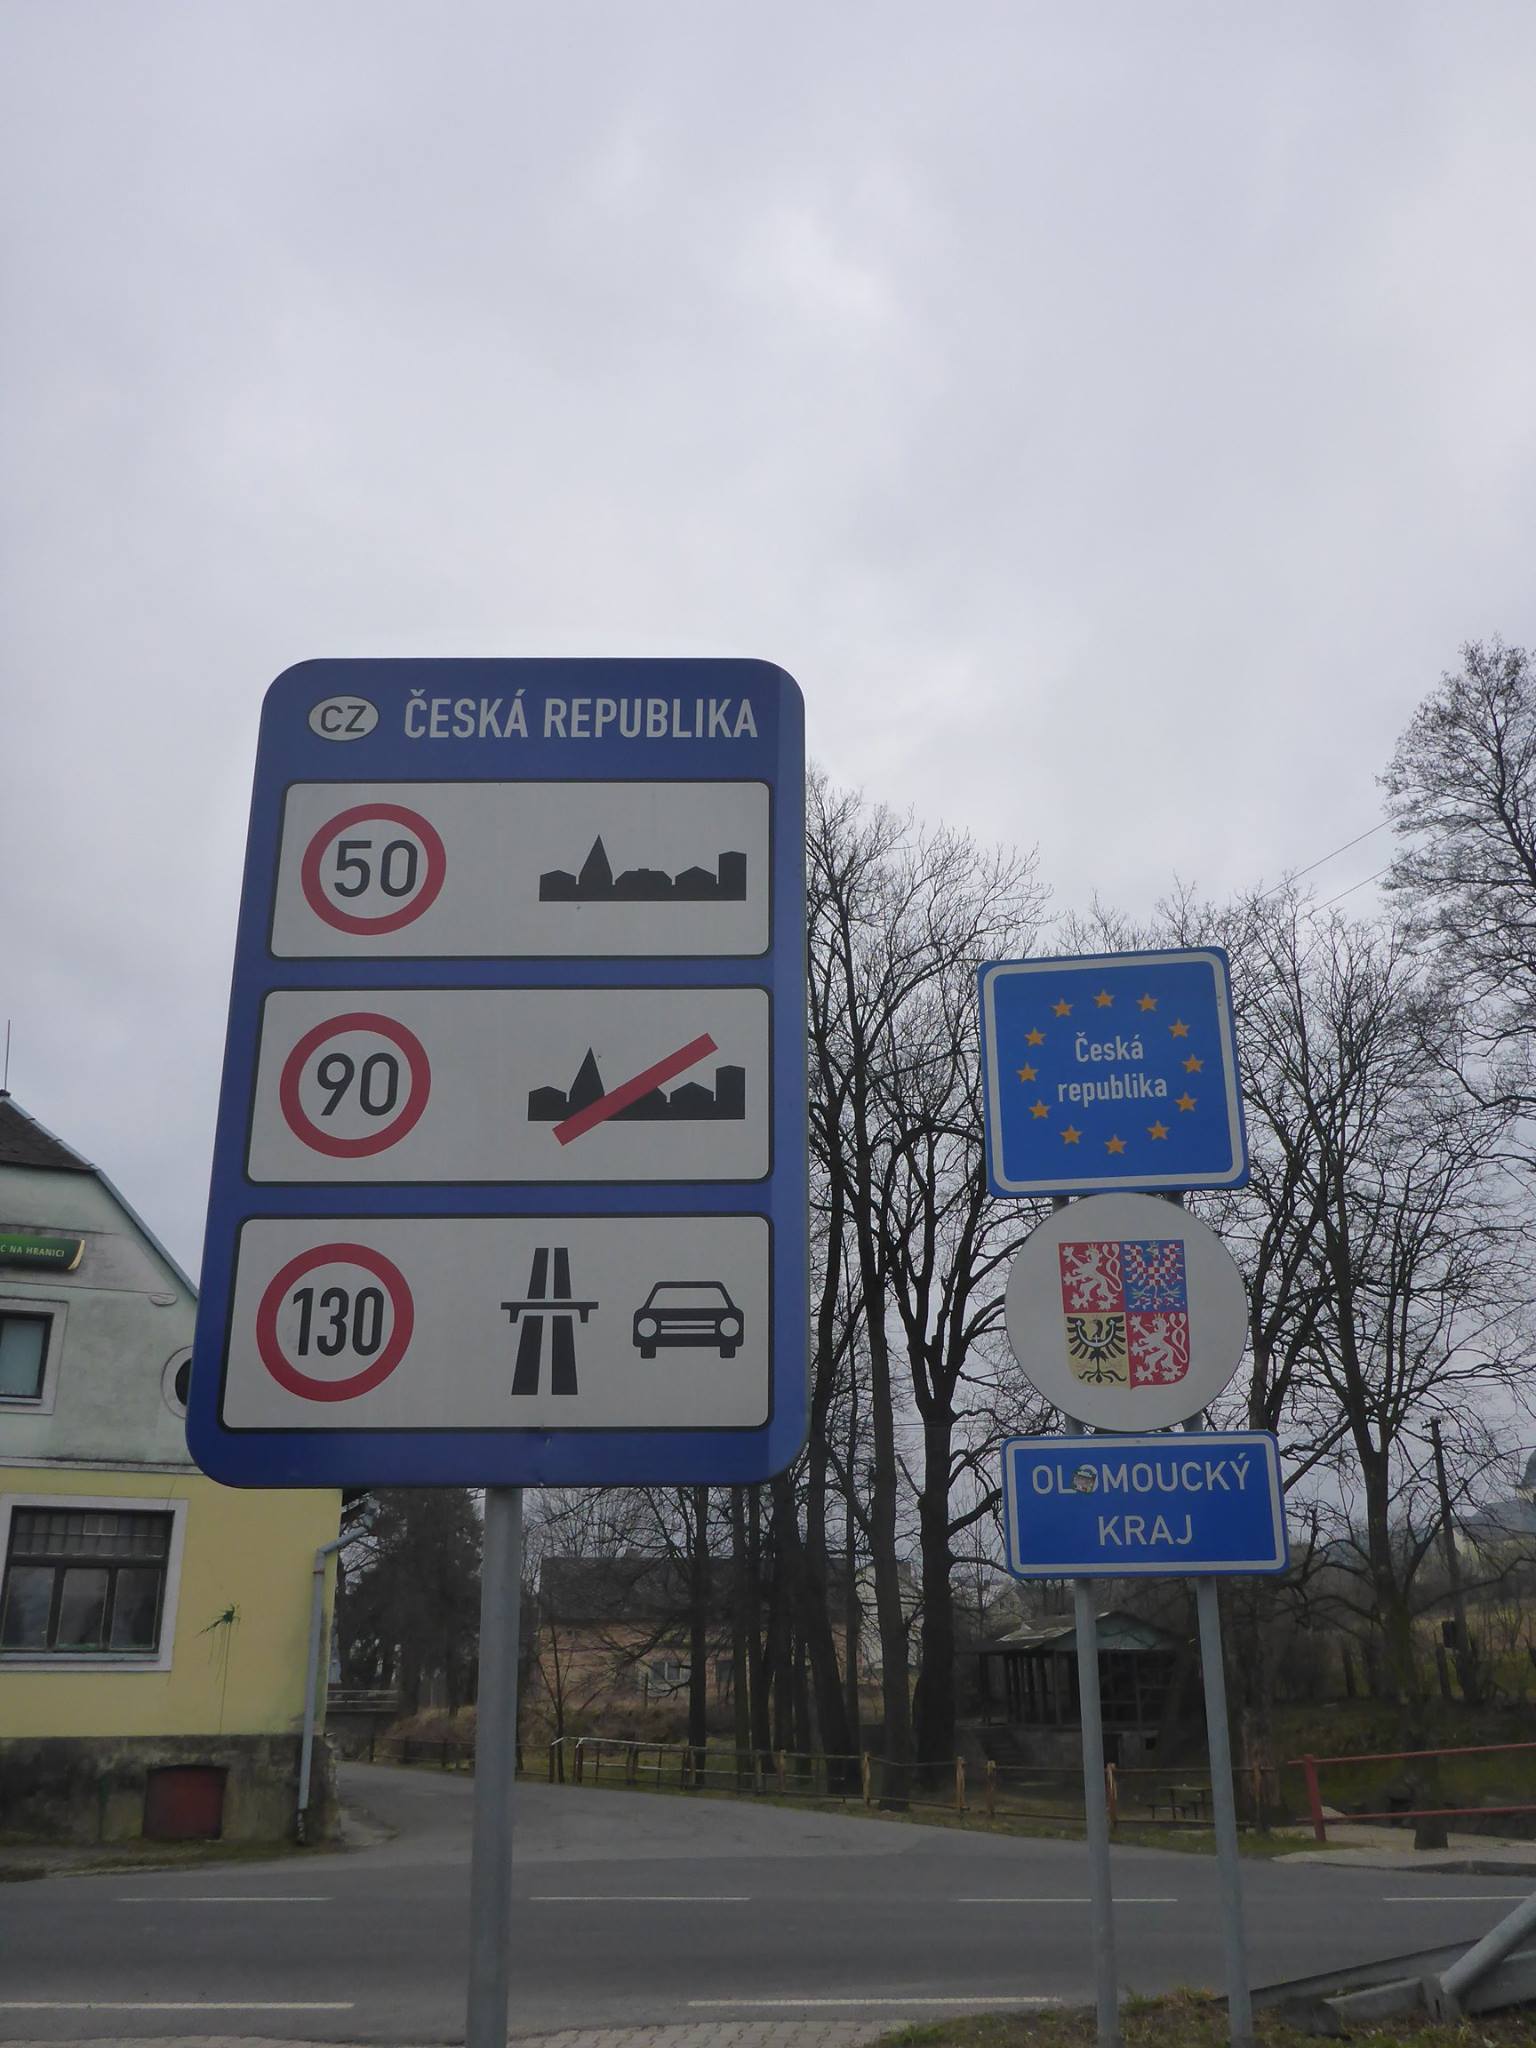 Bienvenue en République Tchèque ! Je reviendrais en Pologne dans environ deux mois à travers les Carpates